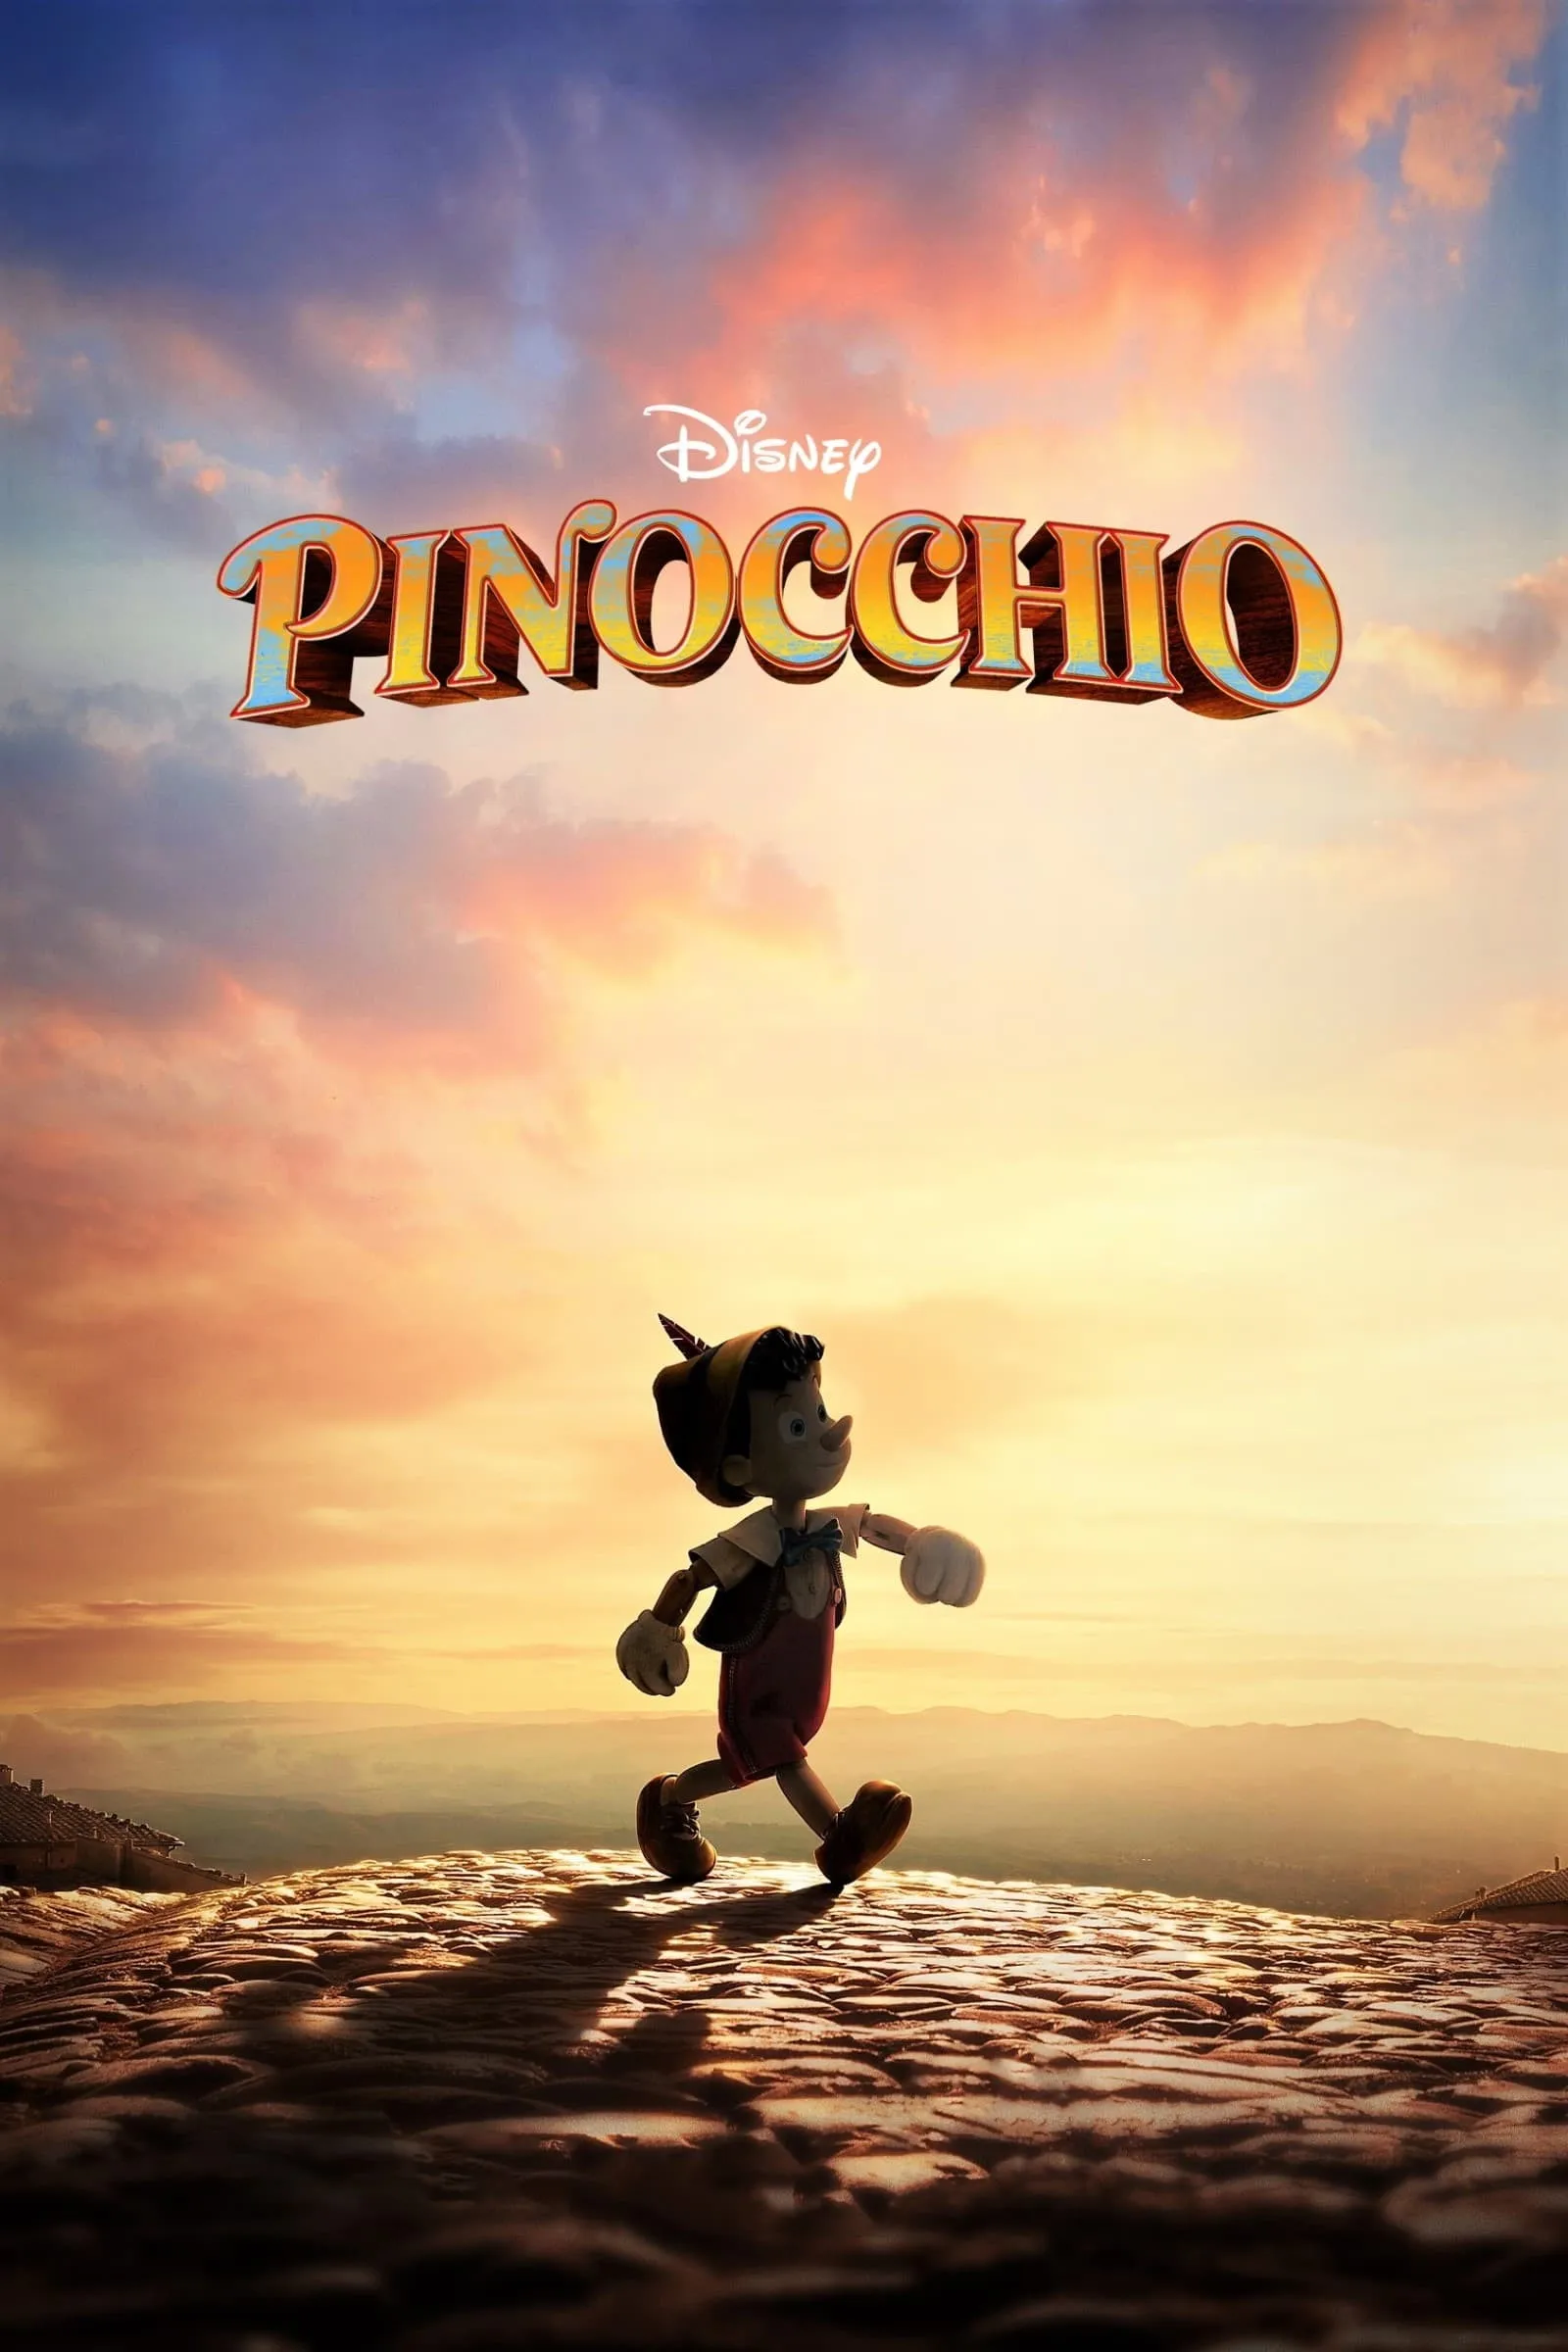 pinocchio movie reviews 2022